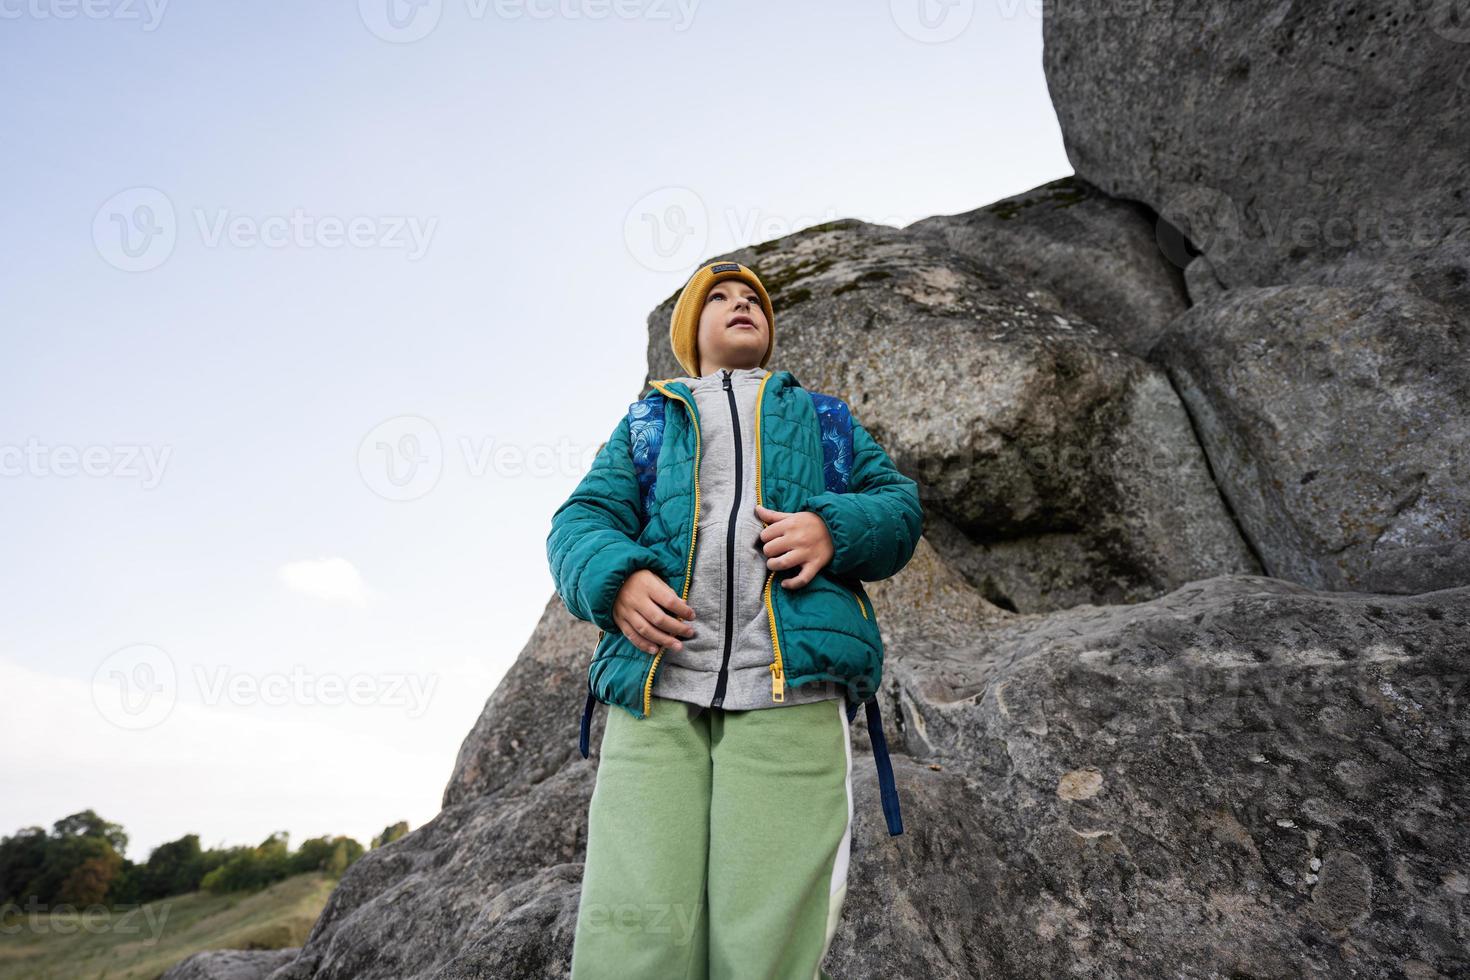 garçon avec sac à dos escalade grosse pierre dans la colline. pidkamin, ukraine. photo